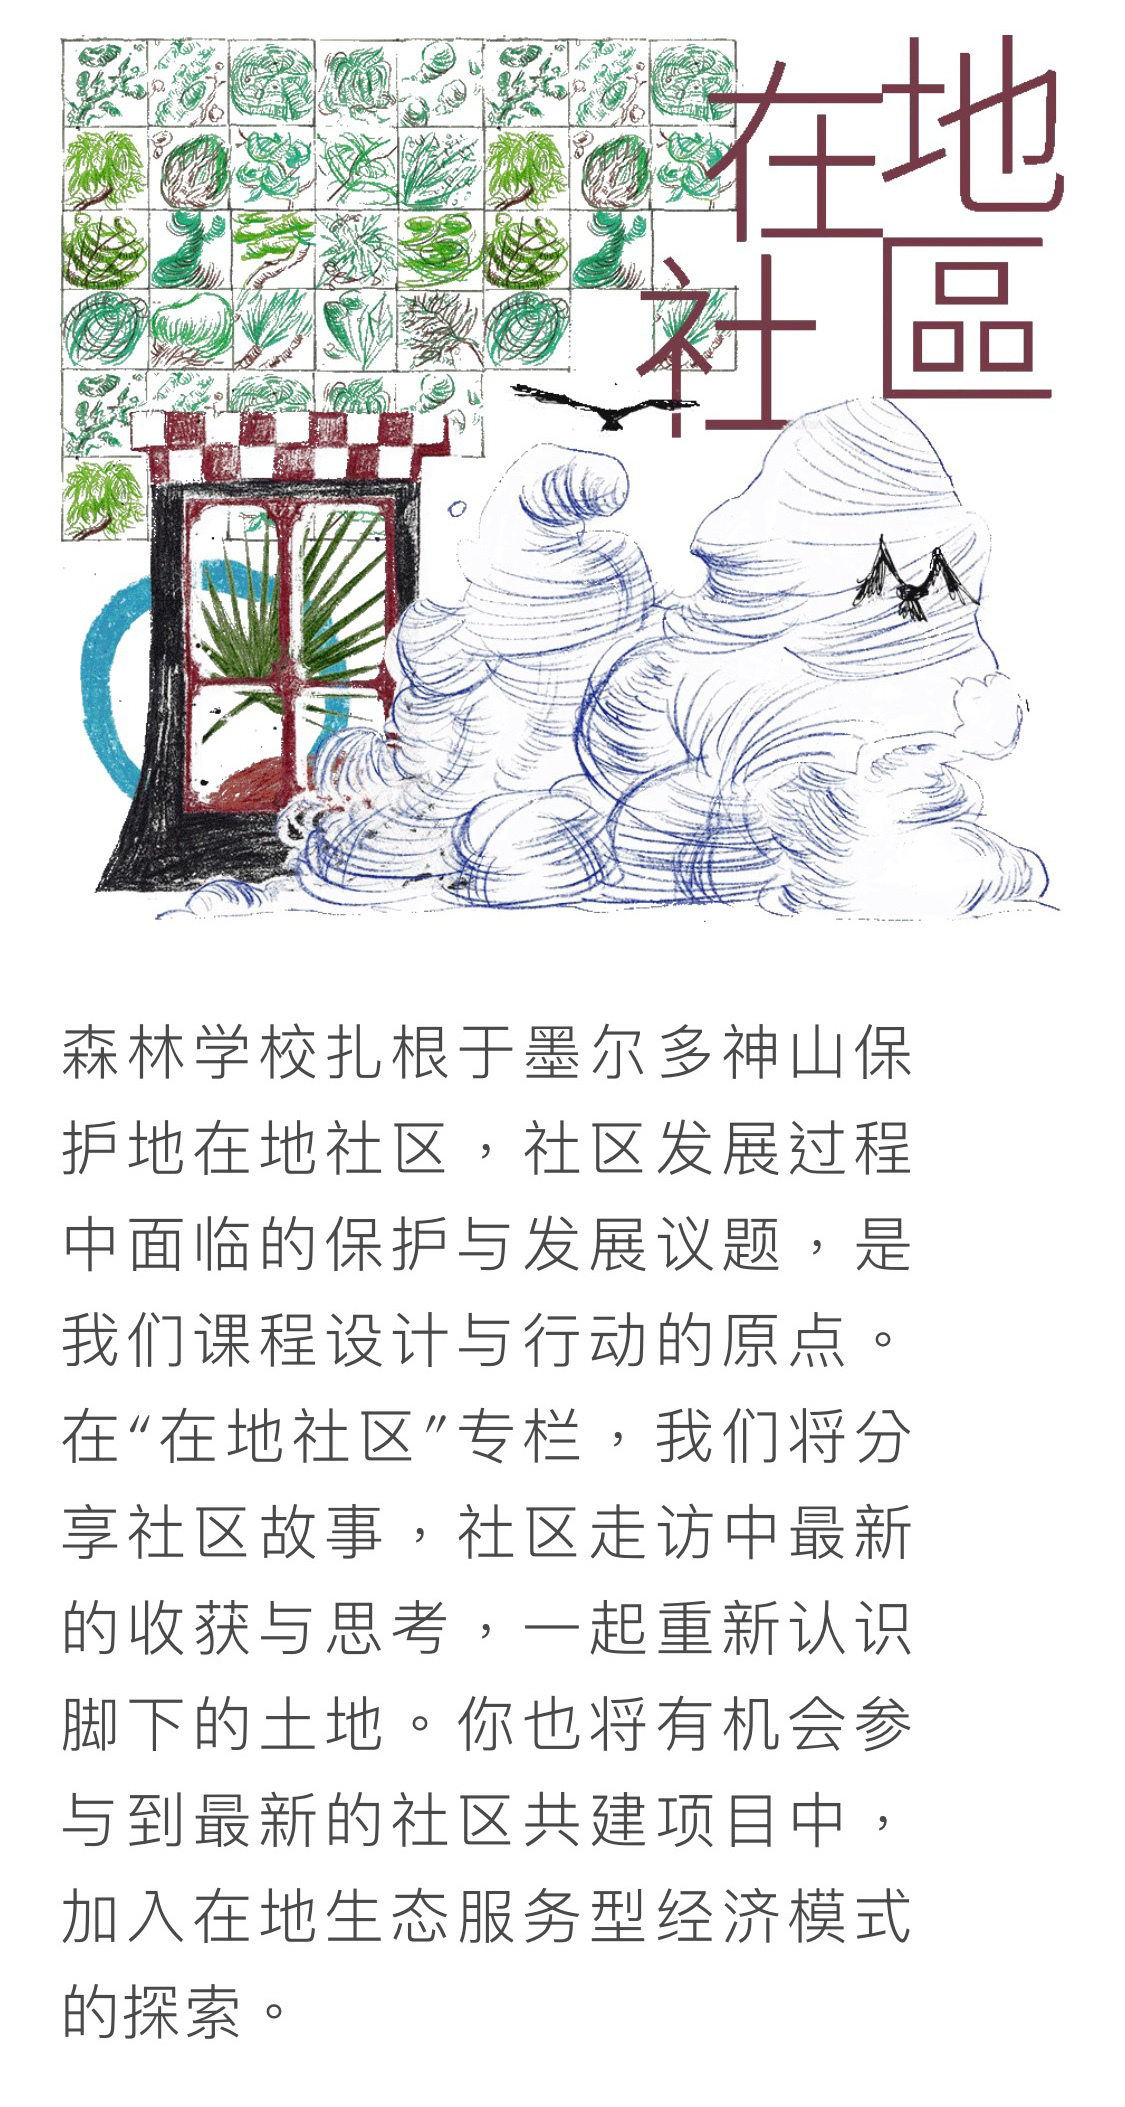 登龍云合森林學校 - 公眾號形象設計/宣傳視覺延展圖6